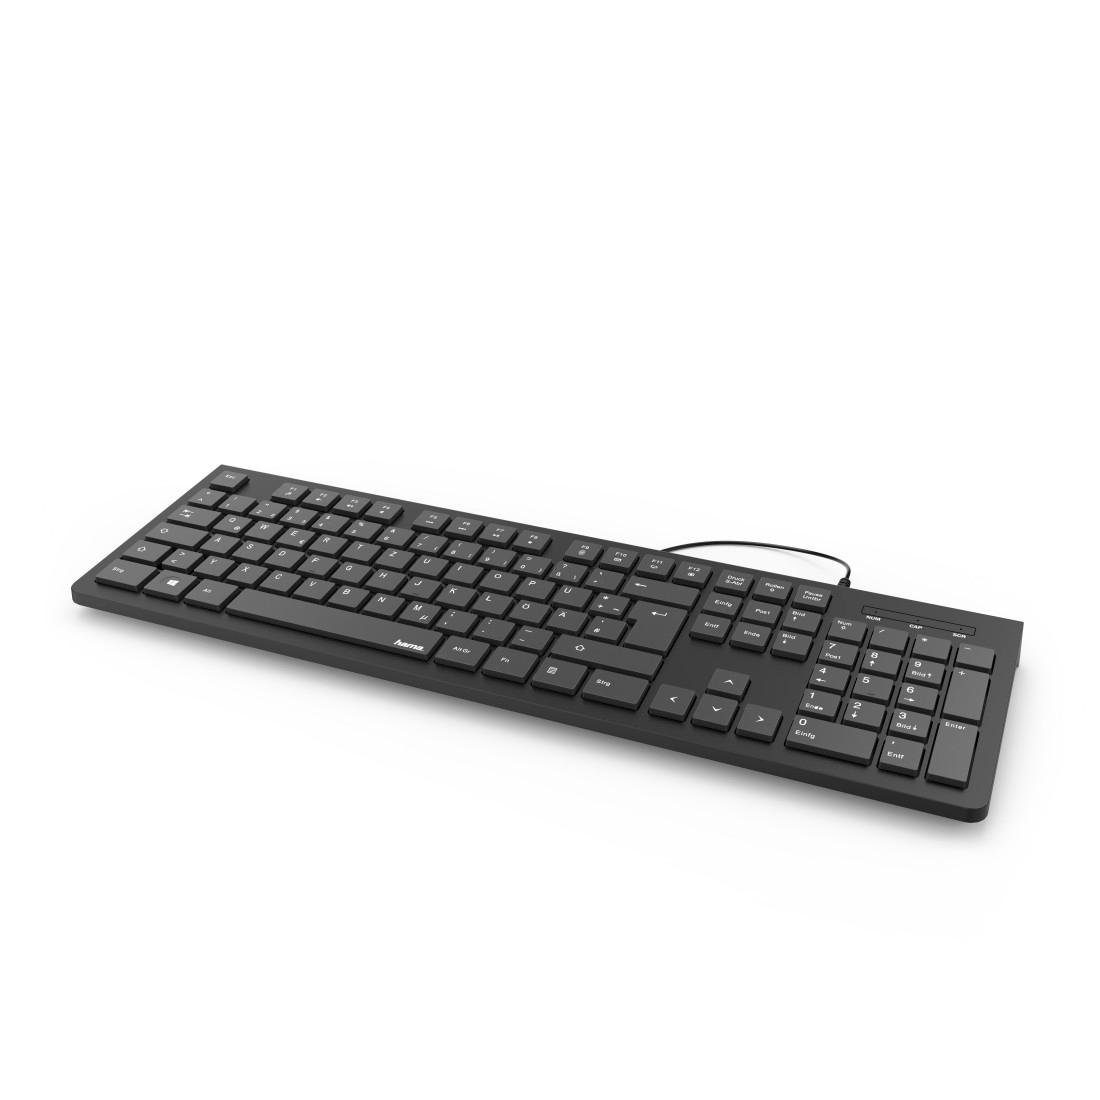 Hama Basic-Tastatur "KC-200", Schwarz Standfüße) PC-Tastatur Kabellänge m 1,5 USB-A-Stecker, (Abgesetzte Tasten/Klappbare